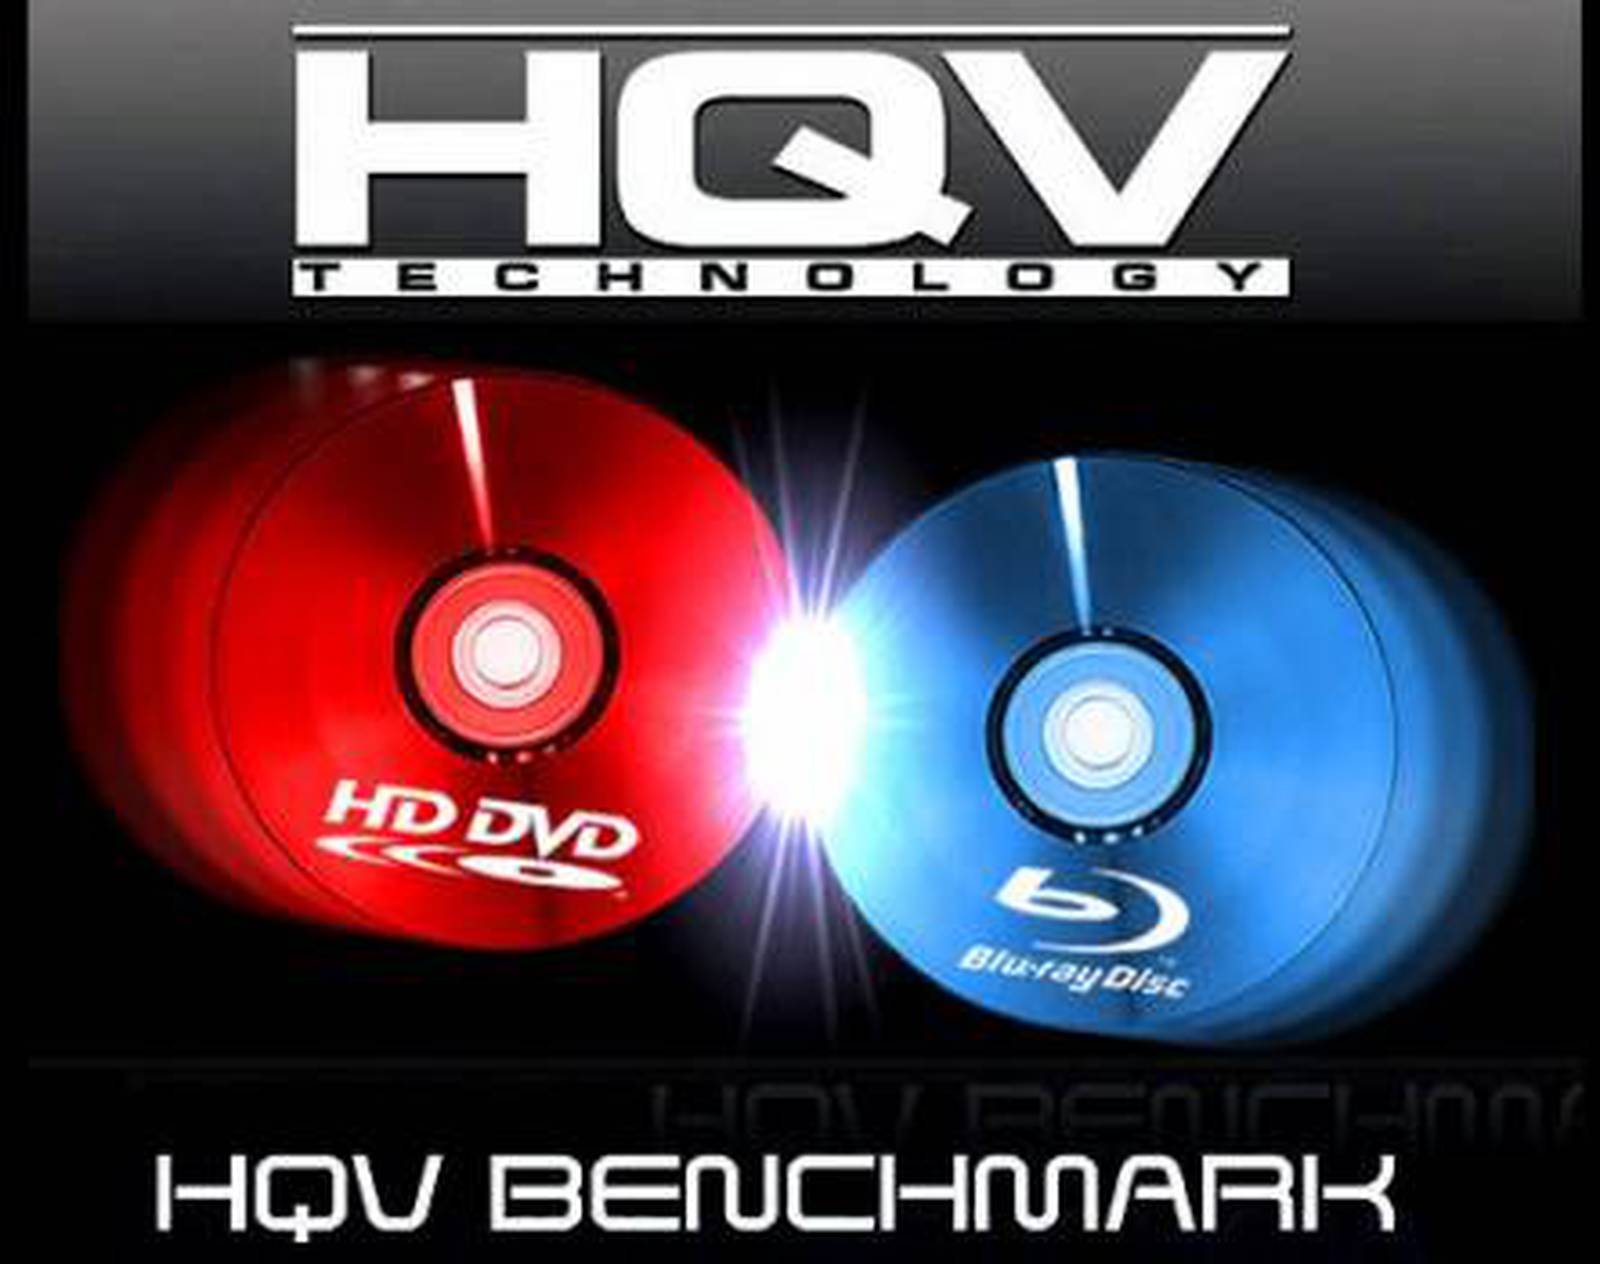 Comparativa HD HQV Benchmark Version 2.0 ATI vs Nvidia vs Intel